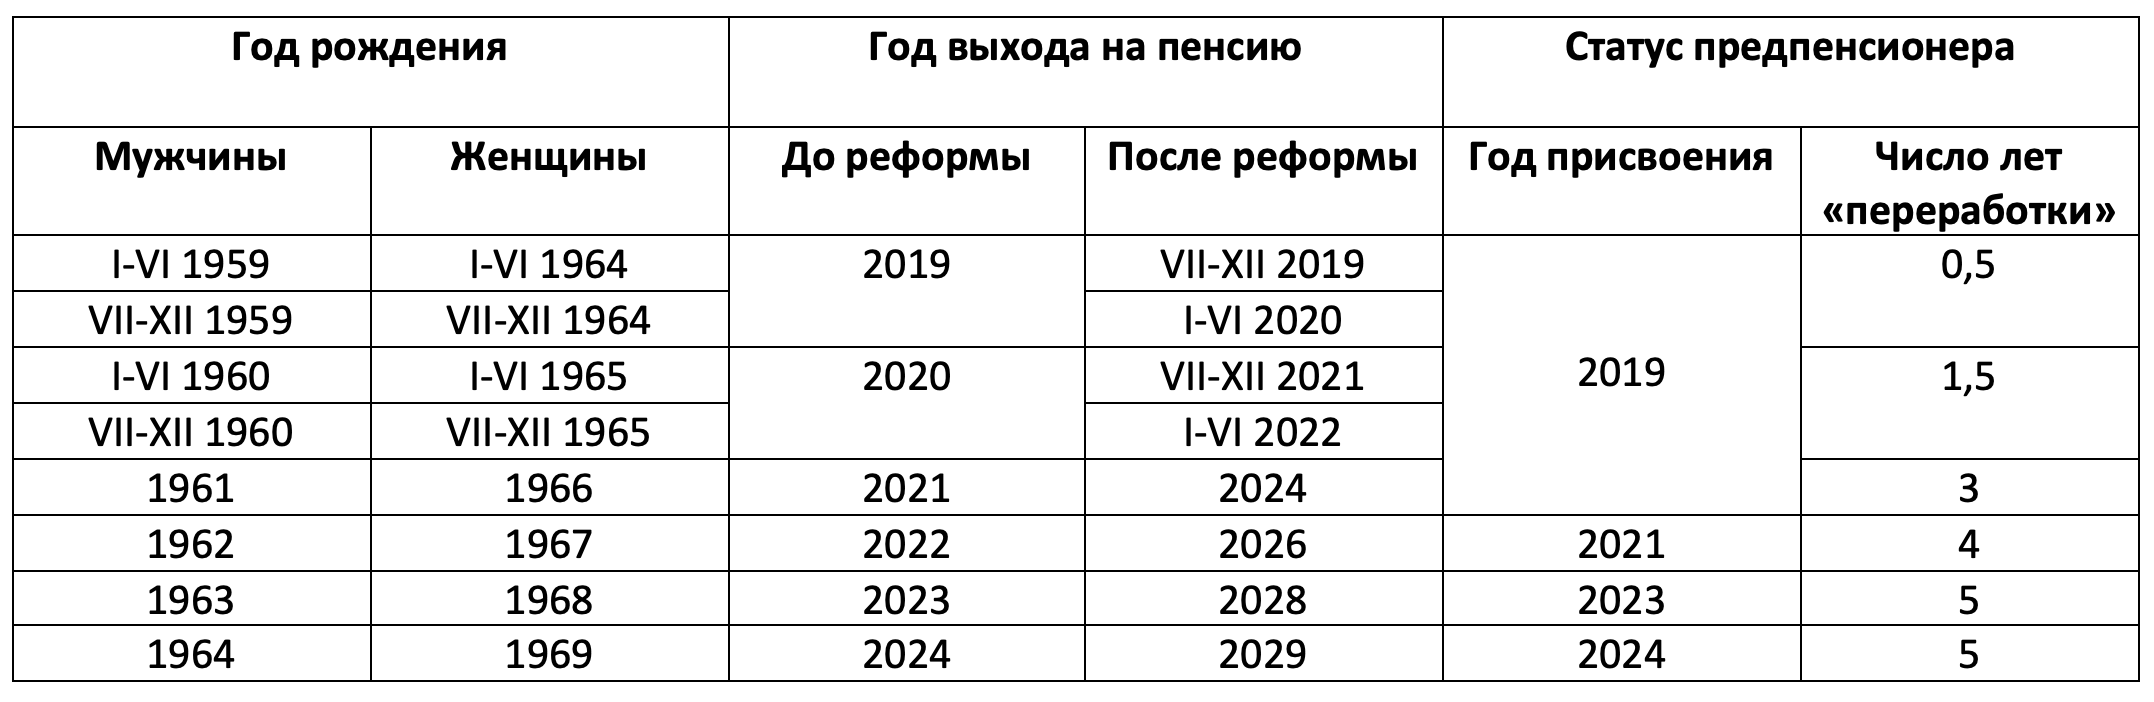 Предпенсионный возраст таблица. Предпенсионный Возраст в 2024 году таблица. Таблица предпенсионного возраста по годам рождения. Предпенсионный Возраст для мужчин в 2024 году. Предпенсионный Возраст в 2024 году для женщин.